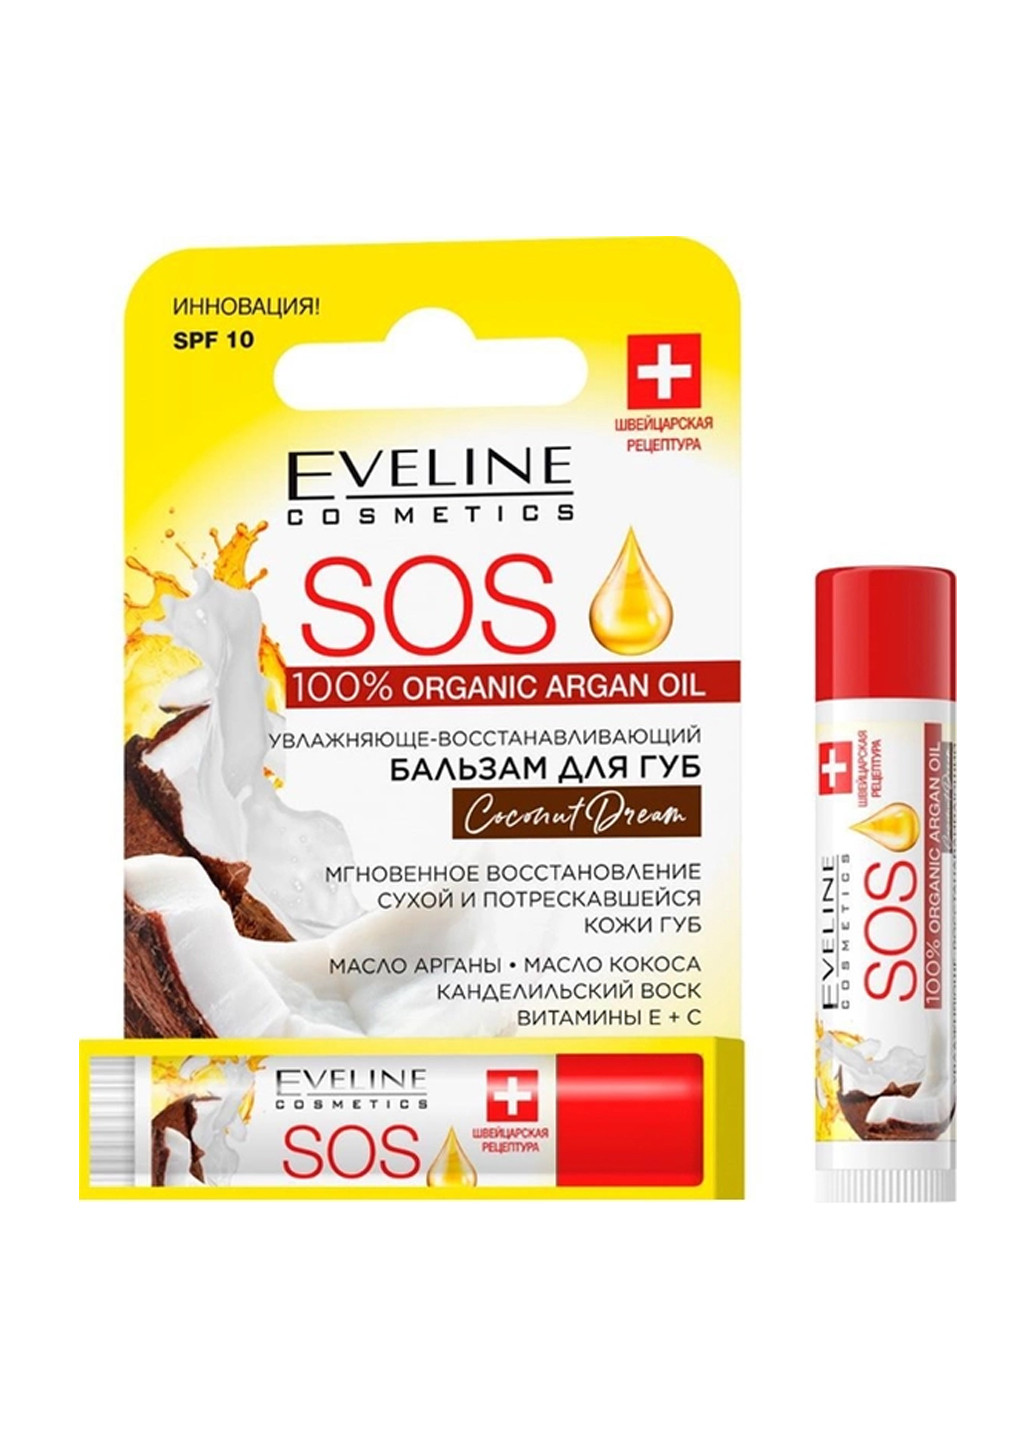 Увлажняющее-восстанавливающий бальзам для губ Eveline SOS 100% Organic Argan Oil Coconut Dream 4.5 мл Eveline Cosmetics 5903416017035 (260063415)